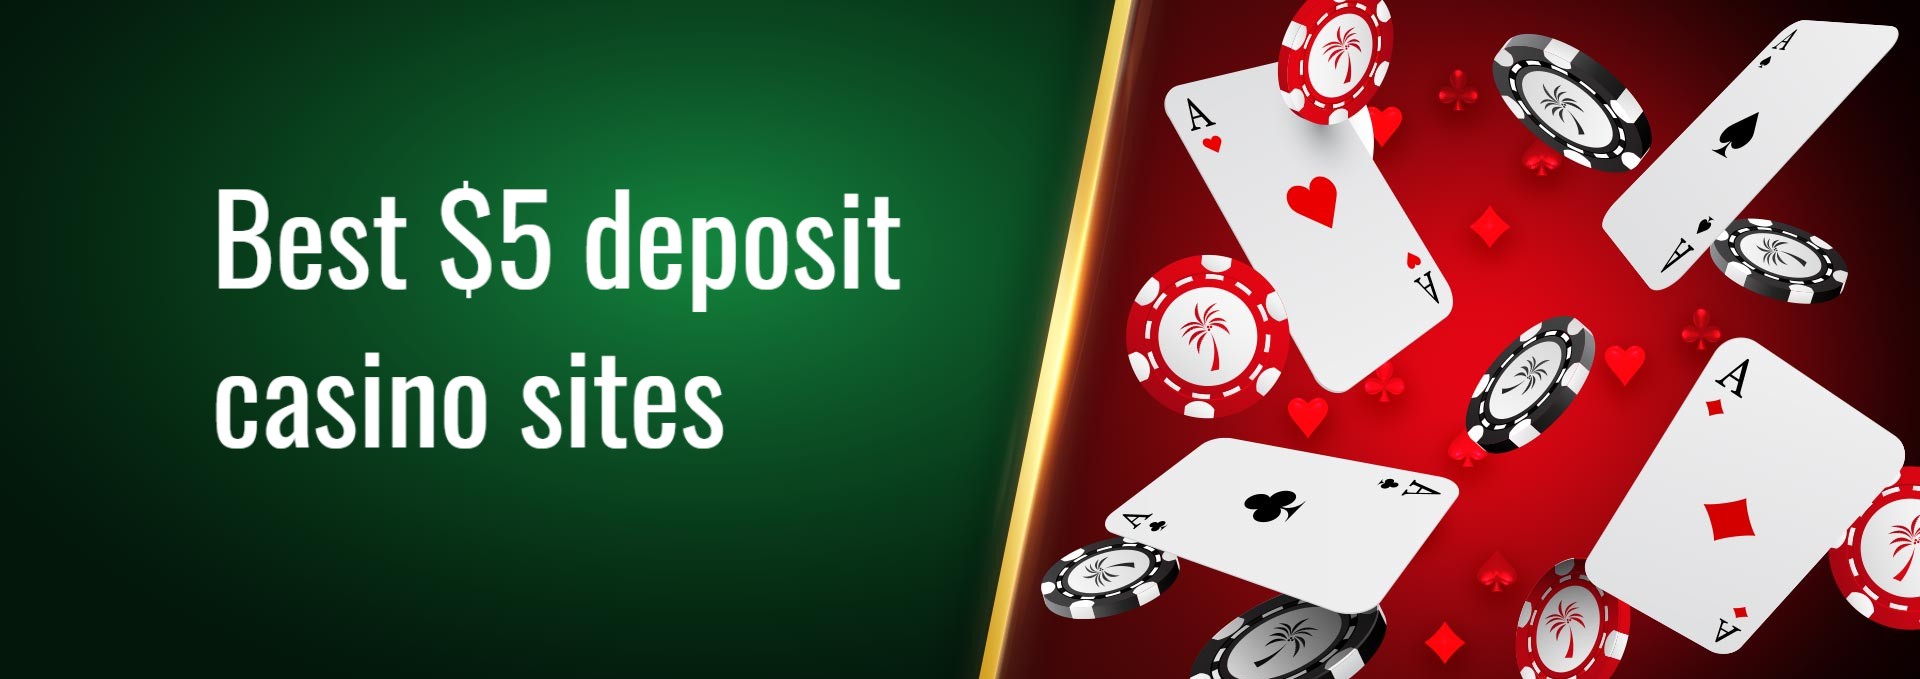 Best 5 deposit casino sites